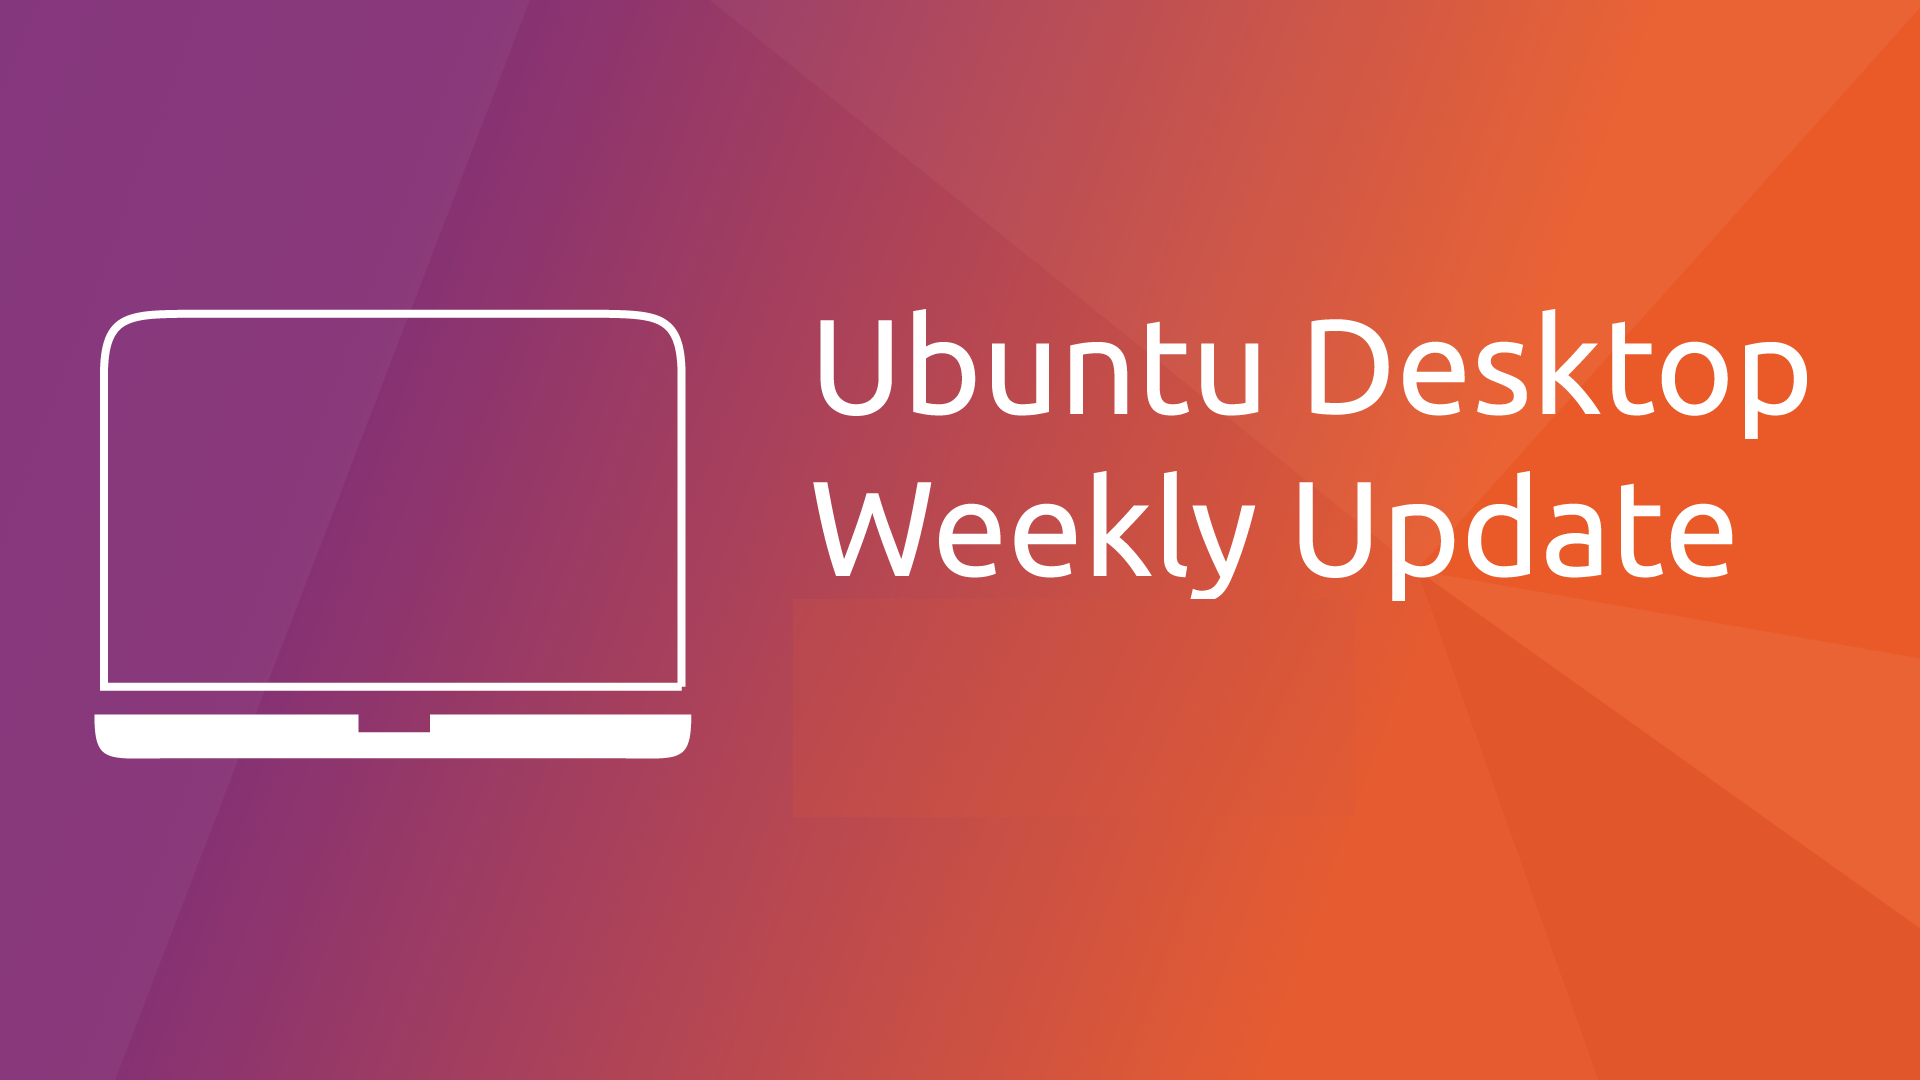 ubuntu news